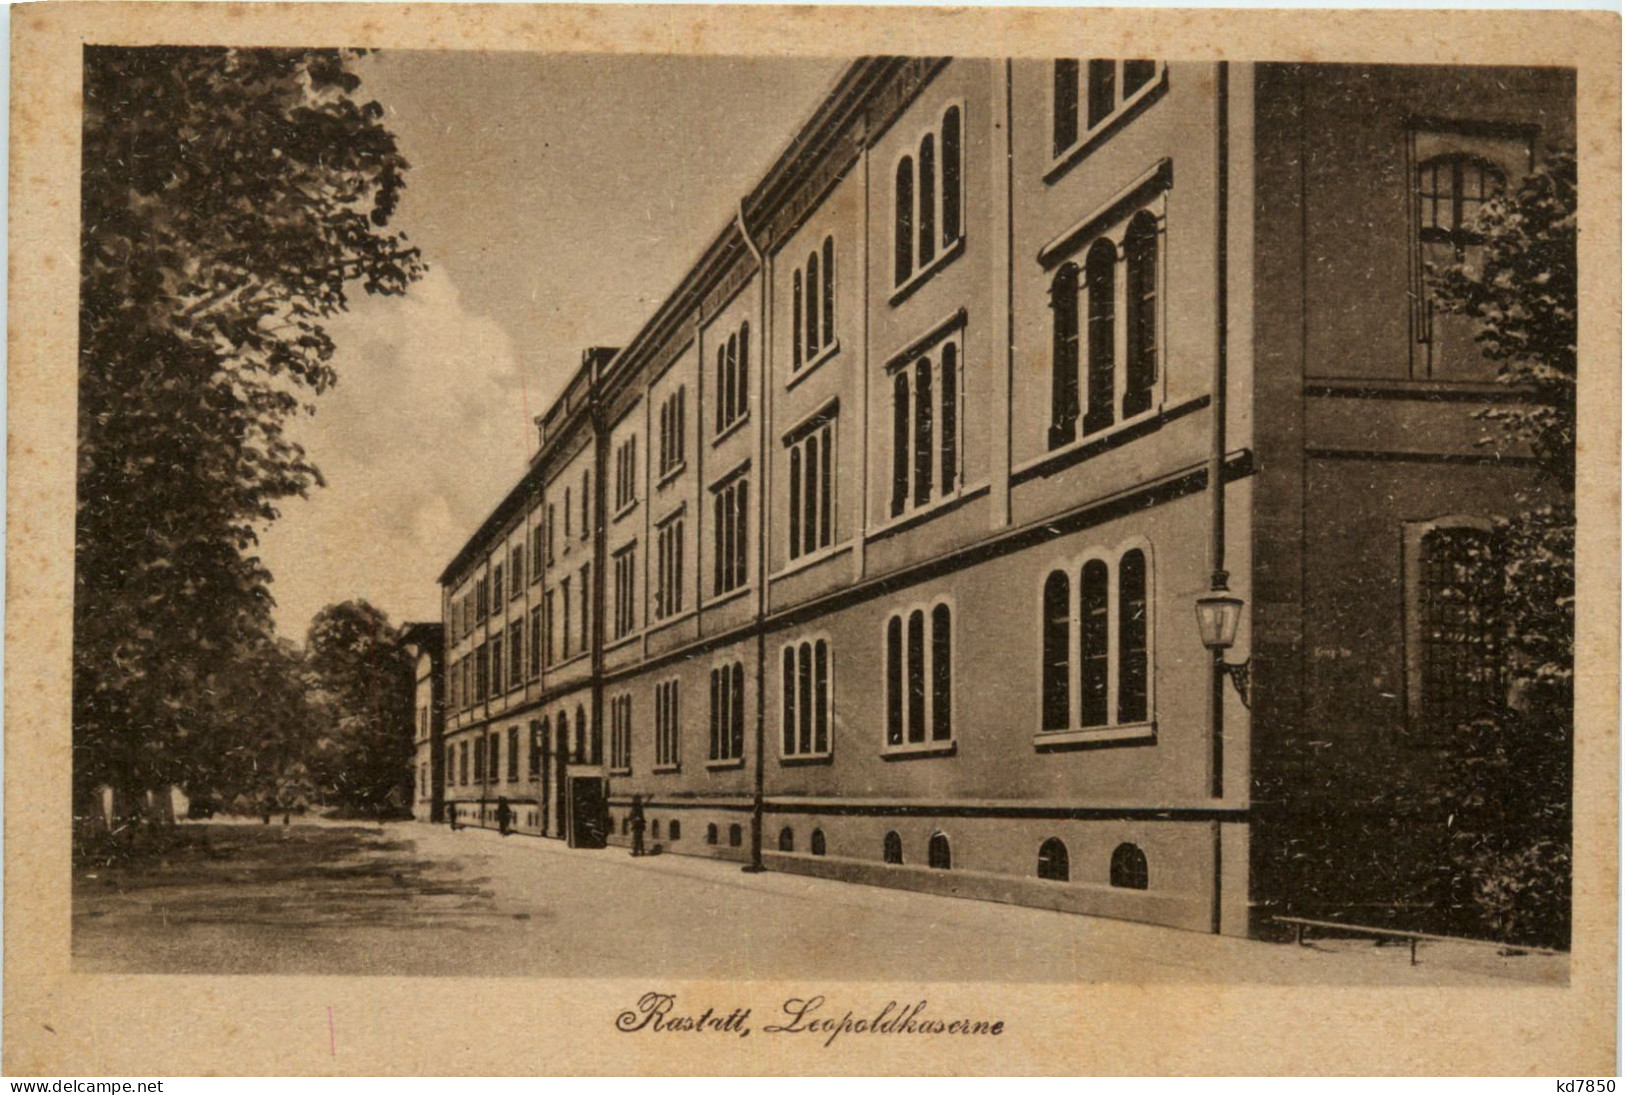 Rastatt - Leopoldkaserne - Rastatt